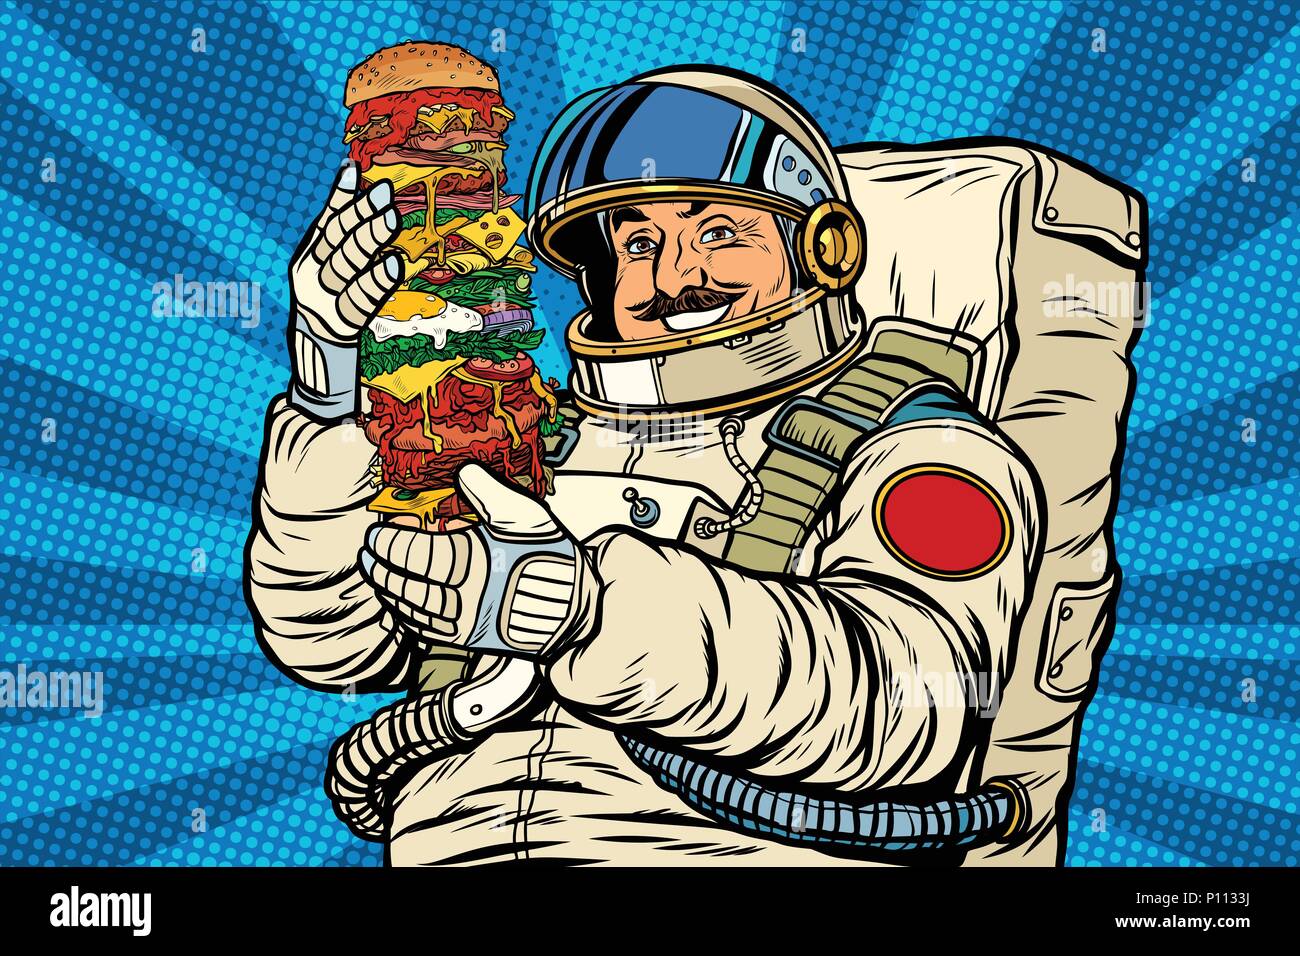 El astronauta con bigotes con hamburguesa gigante Ilustración del Vector